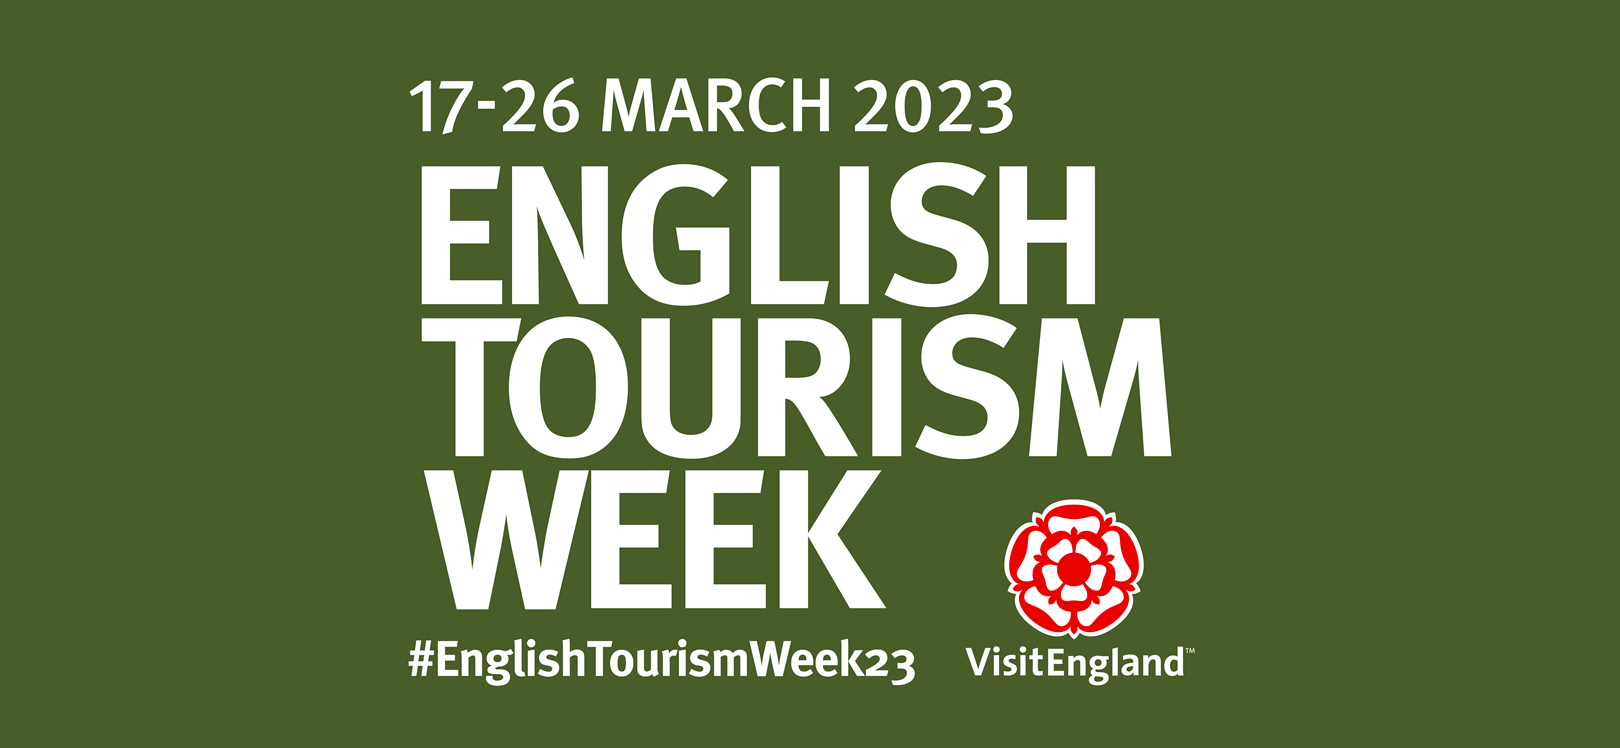 English Tourism Week logo